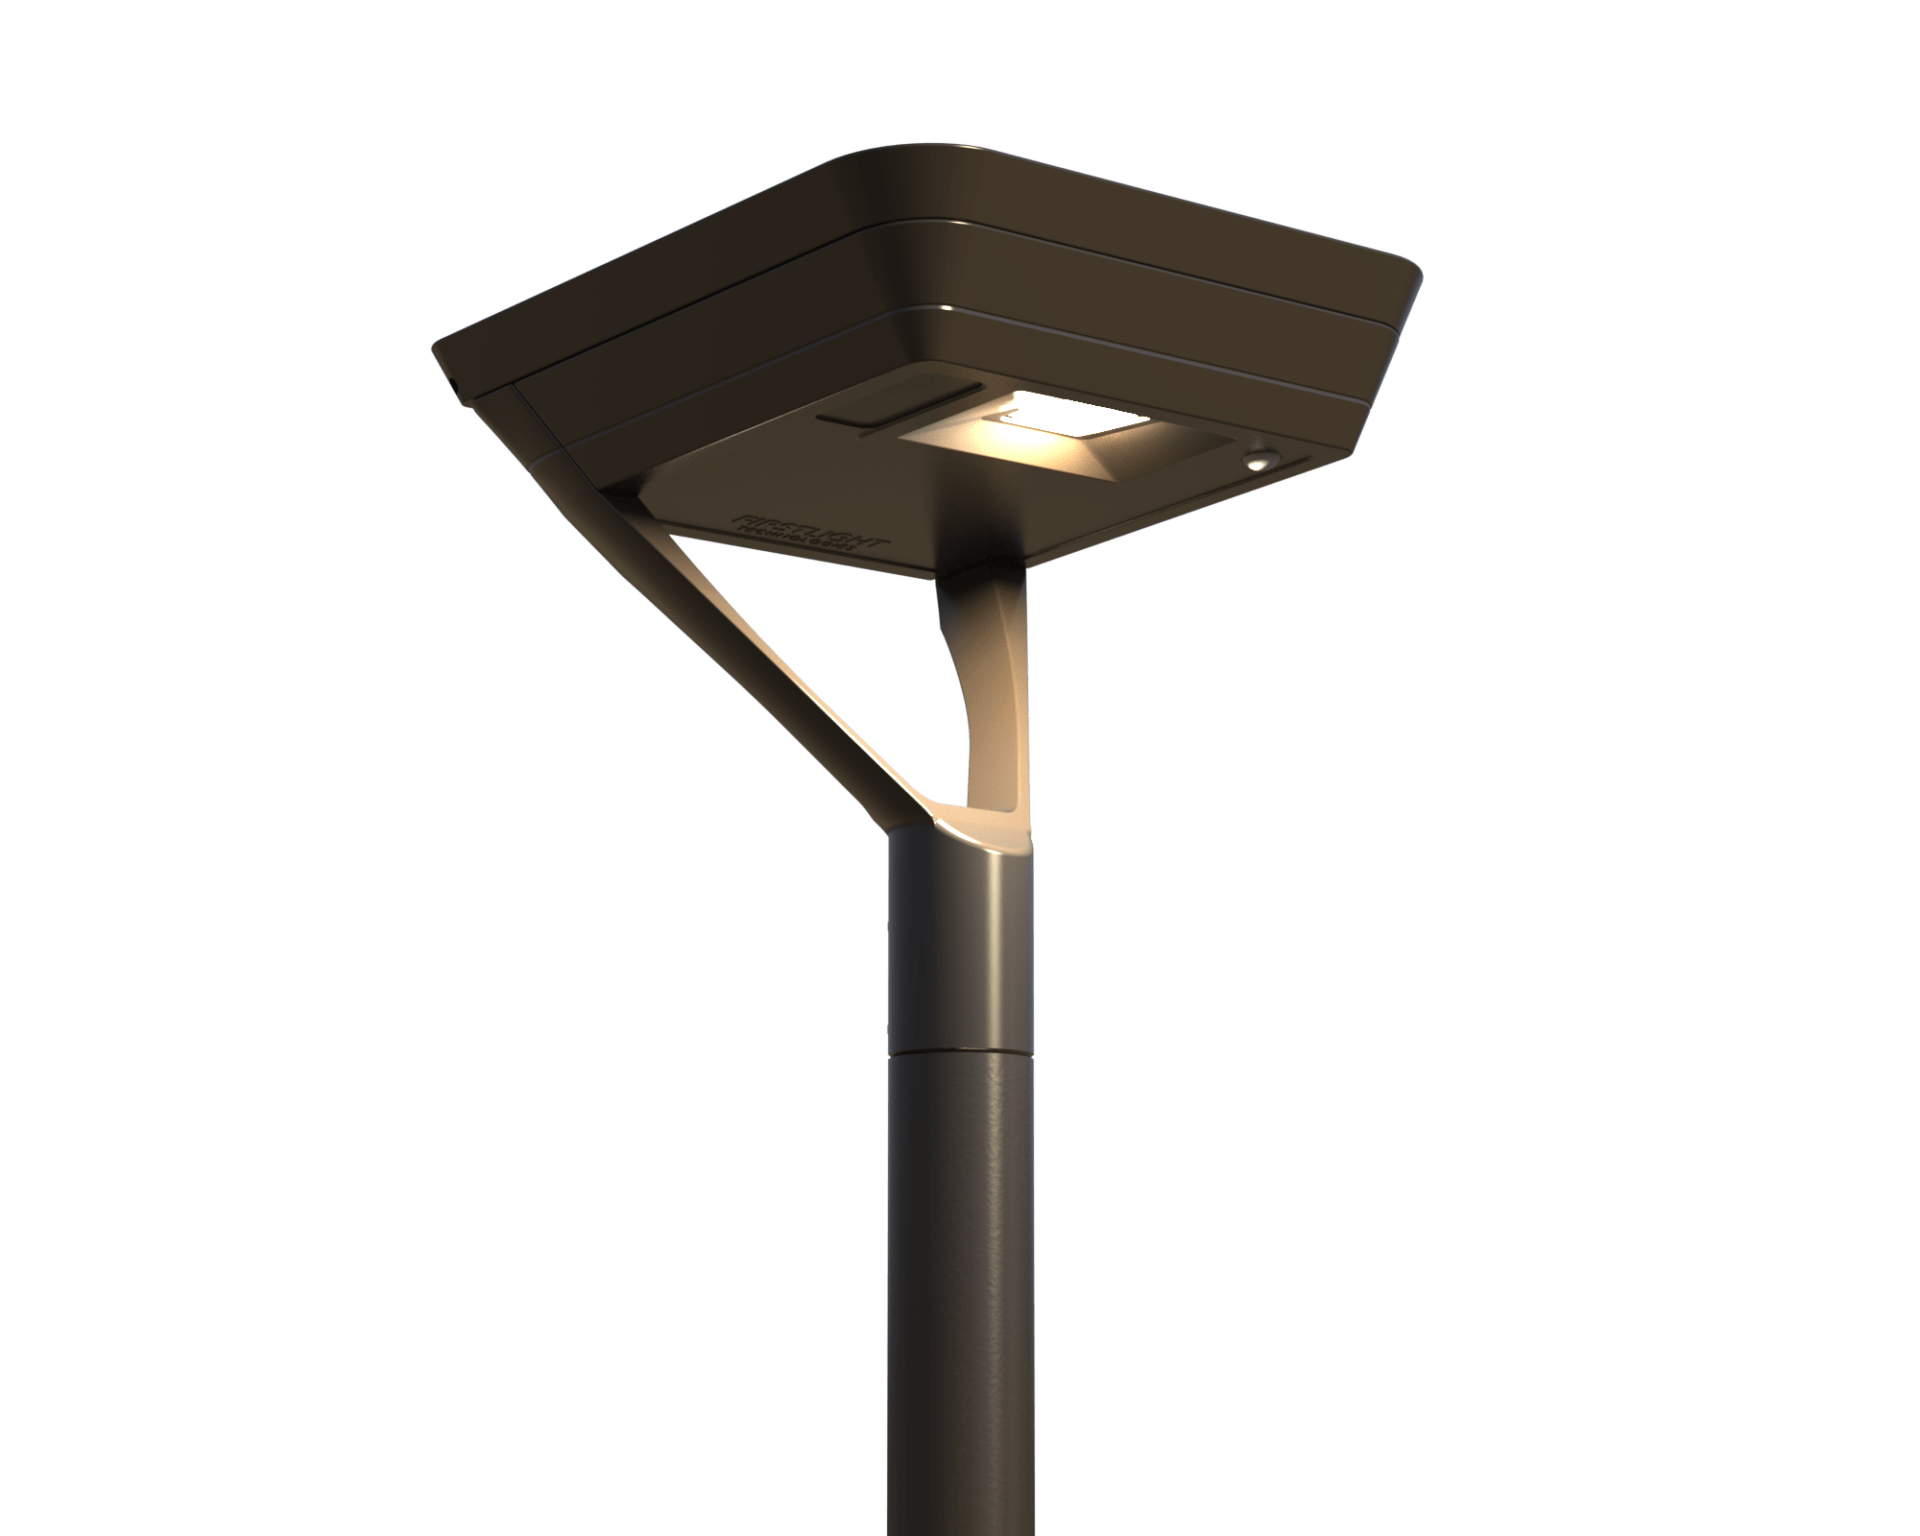 ipl-series-solar-lighting-for-park-lights-more-first-light